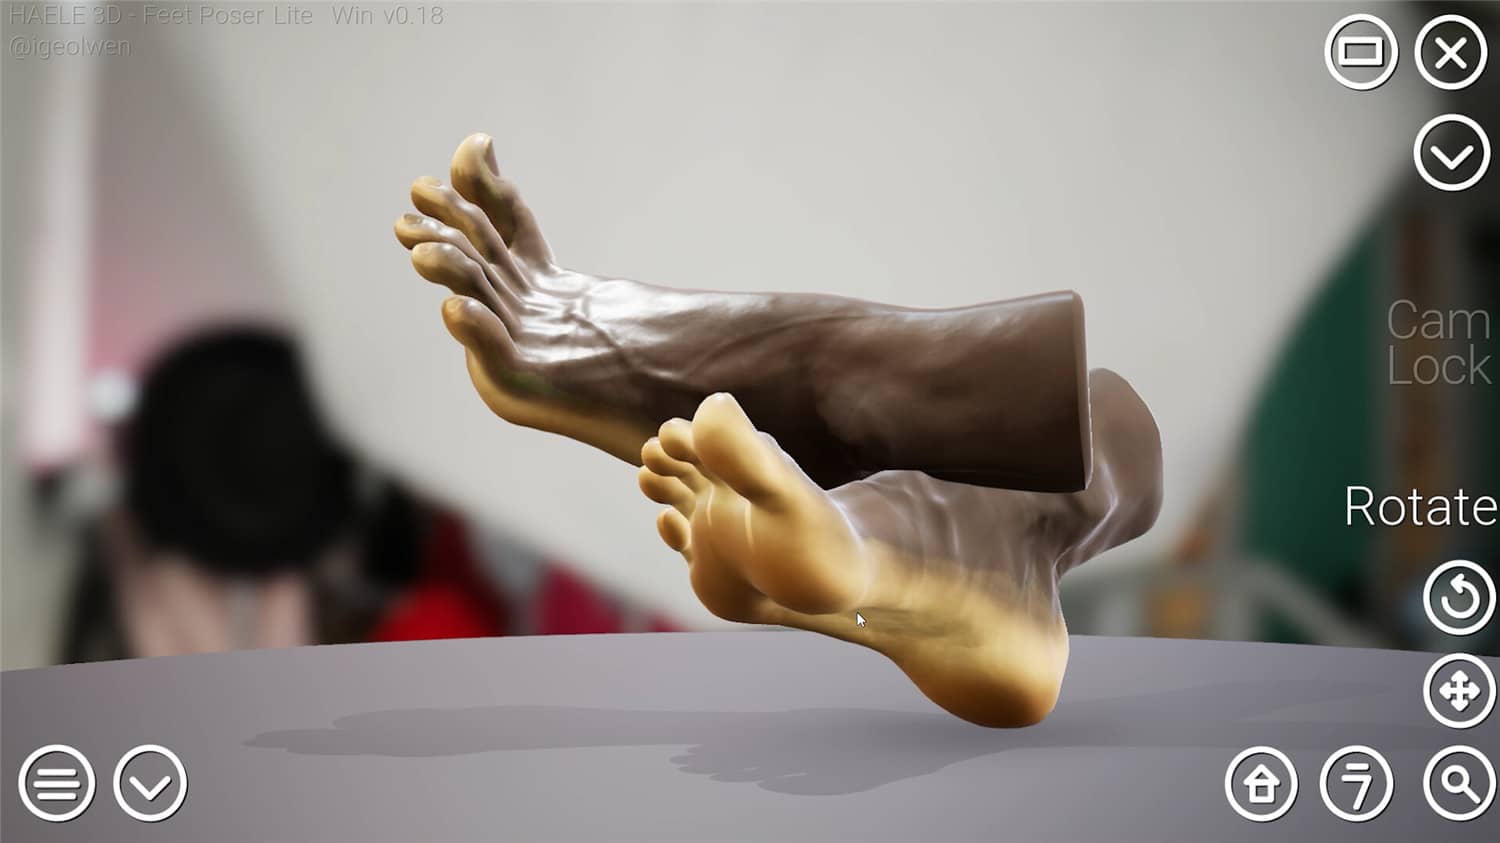 足部造型模拟器/HAELE 3D - Feet Poser Lite插图9